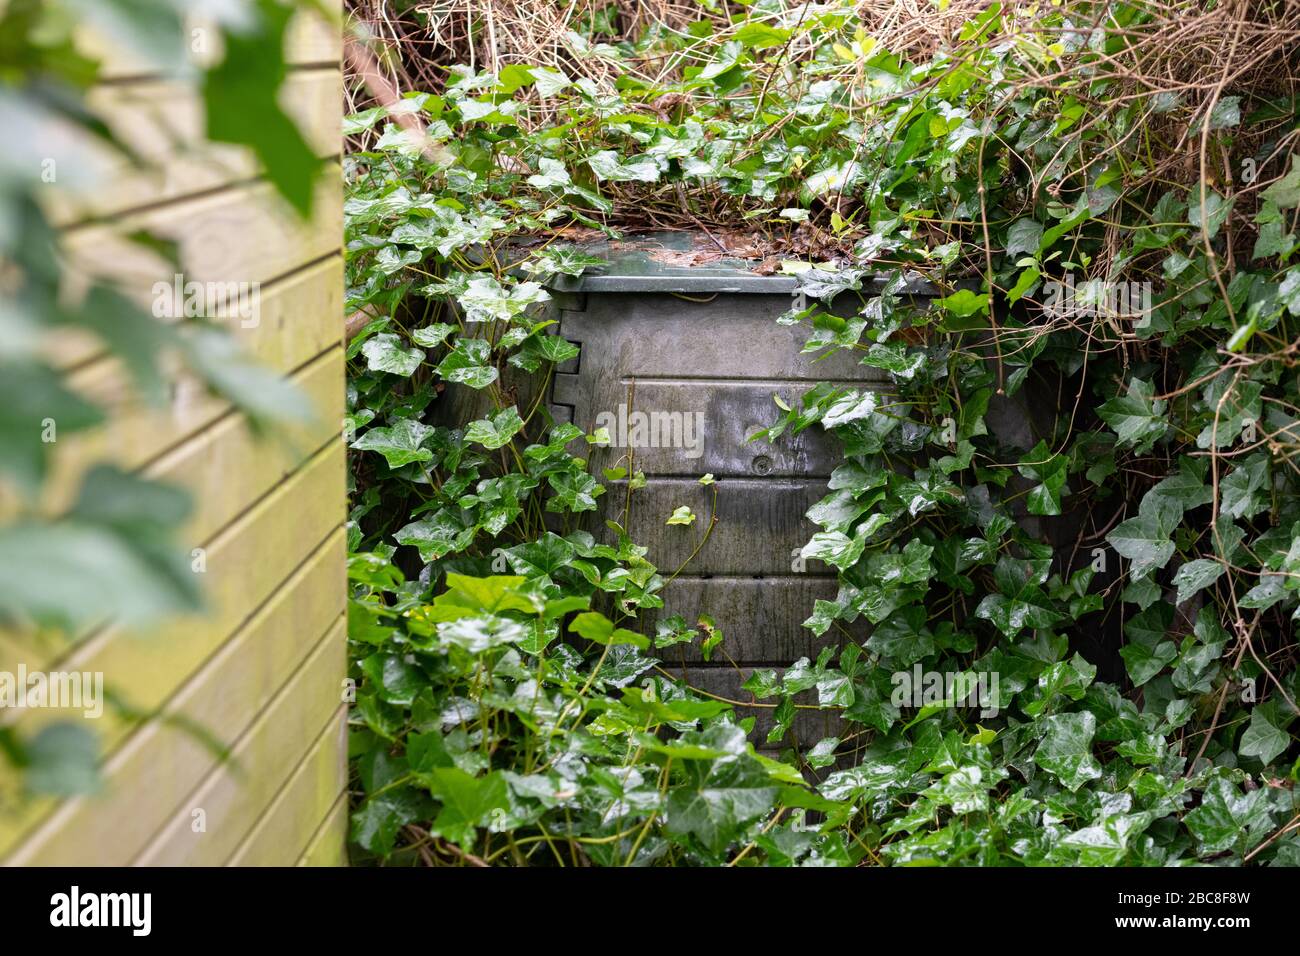 Verwahrloste überwucherte Mülltonne in schattiger Gartenecke hinter Schuppen Stockfoto